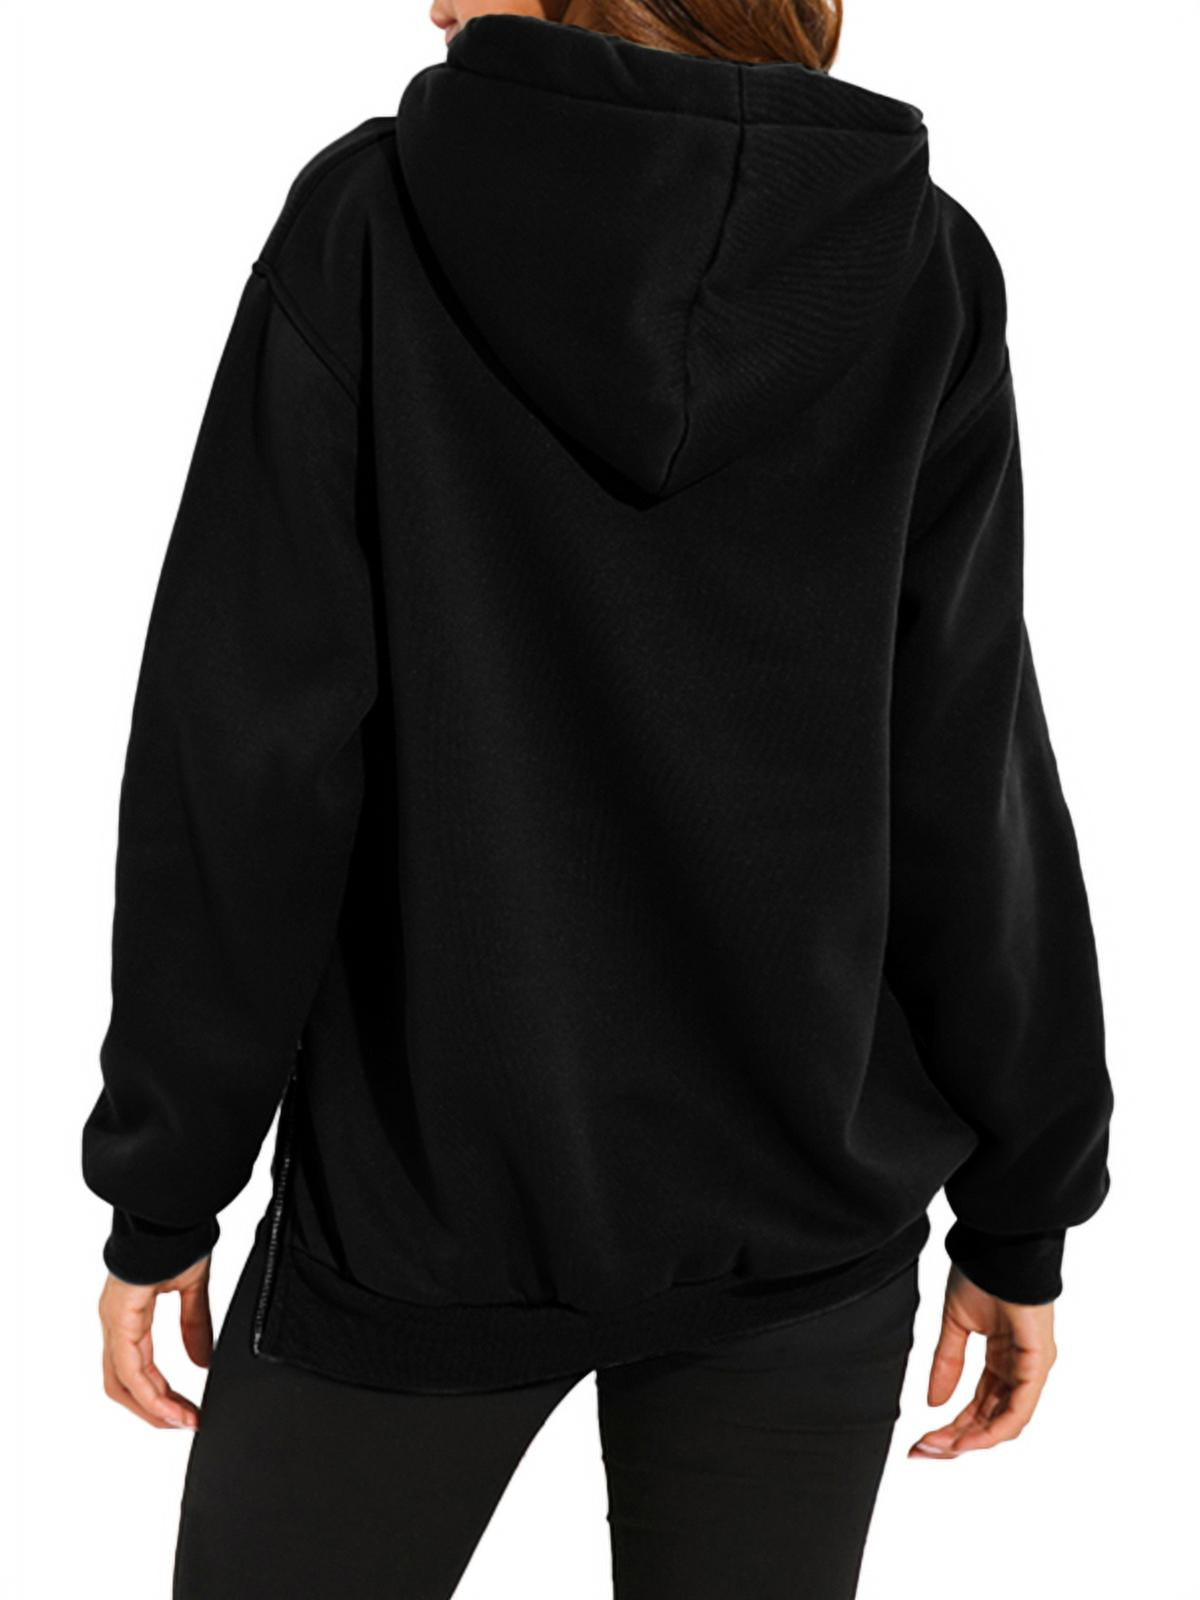 Zanzea Women's Casual Loose Side Zipper Long Sleeve Pullover Sweatshirt, Black M